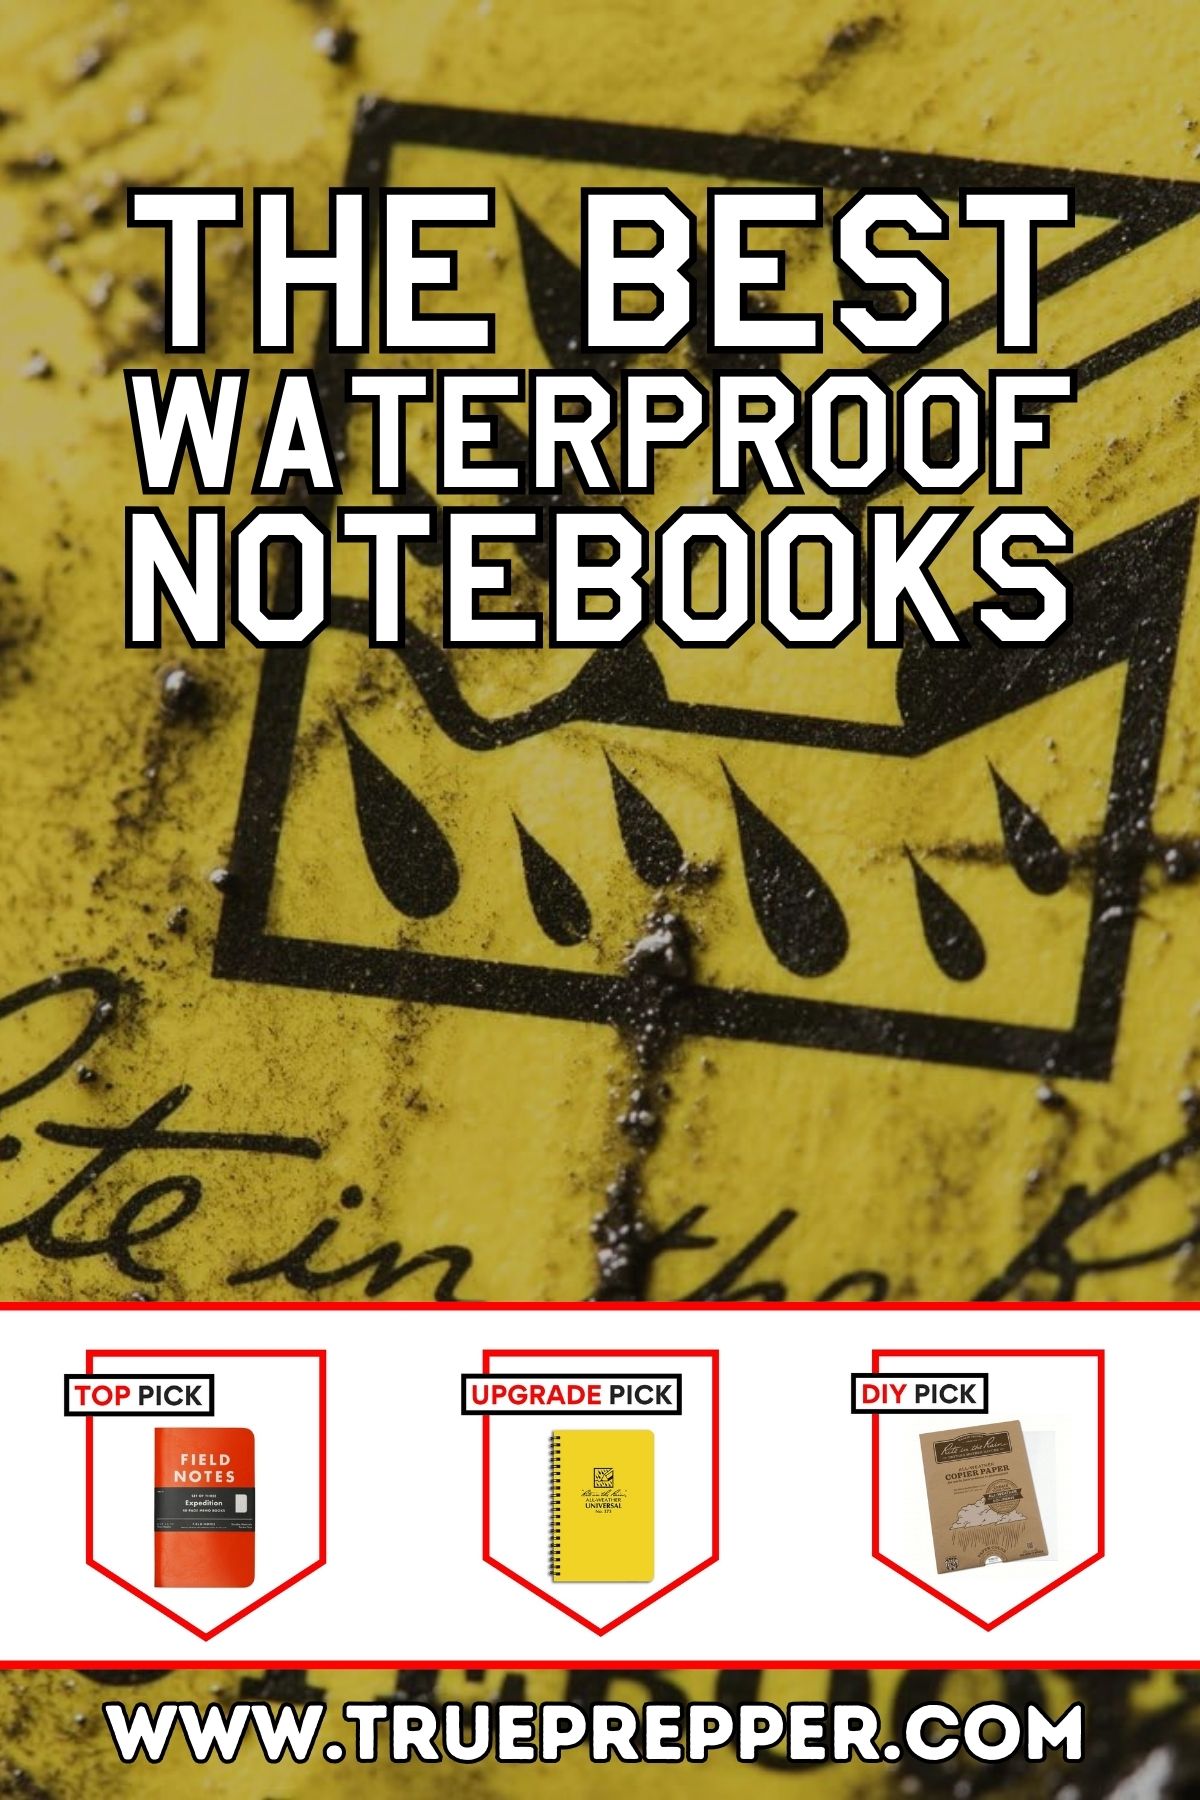 The Best Waterproof Notebooks